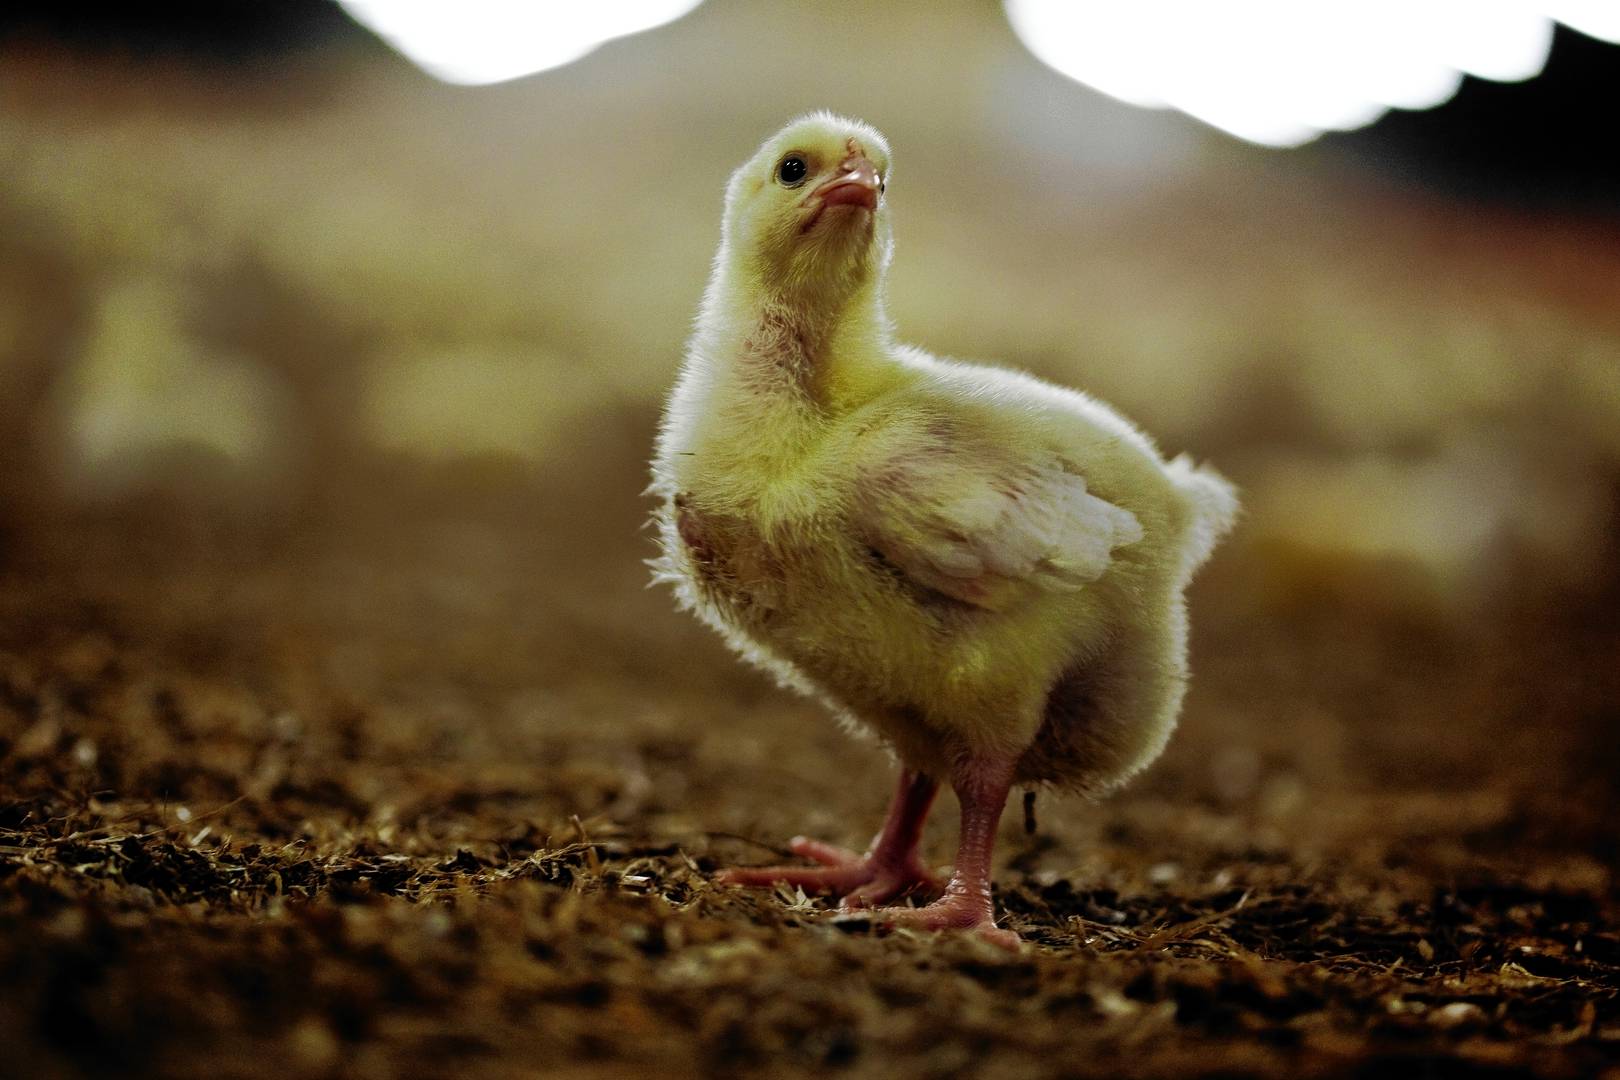 I 2020 søgte kyllingeproducent om at etablere et anlæg på 12.000 kvadratmeter, men efter flere høringsperioder er projektet blevet halveret. Lokalsamfundet har fortsat stor skepsis omkring etableringen.